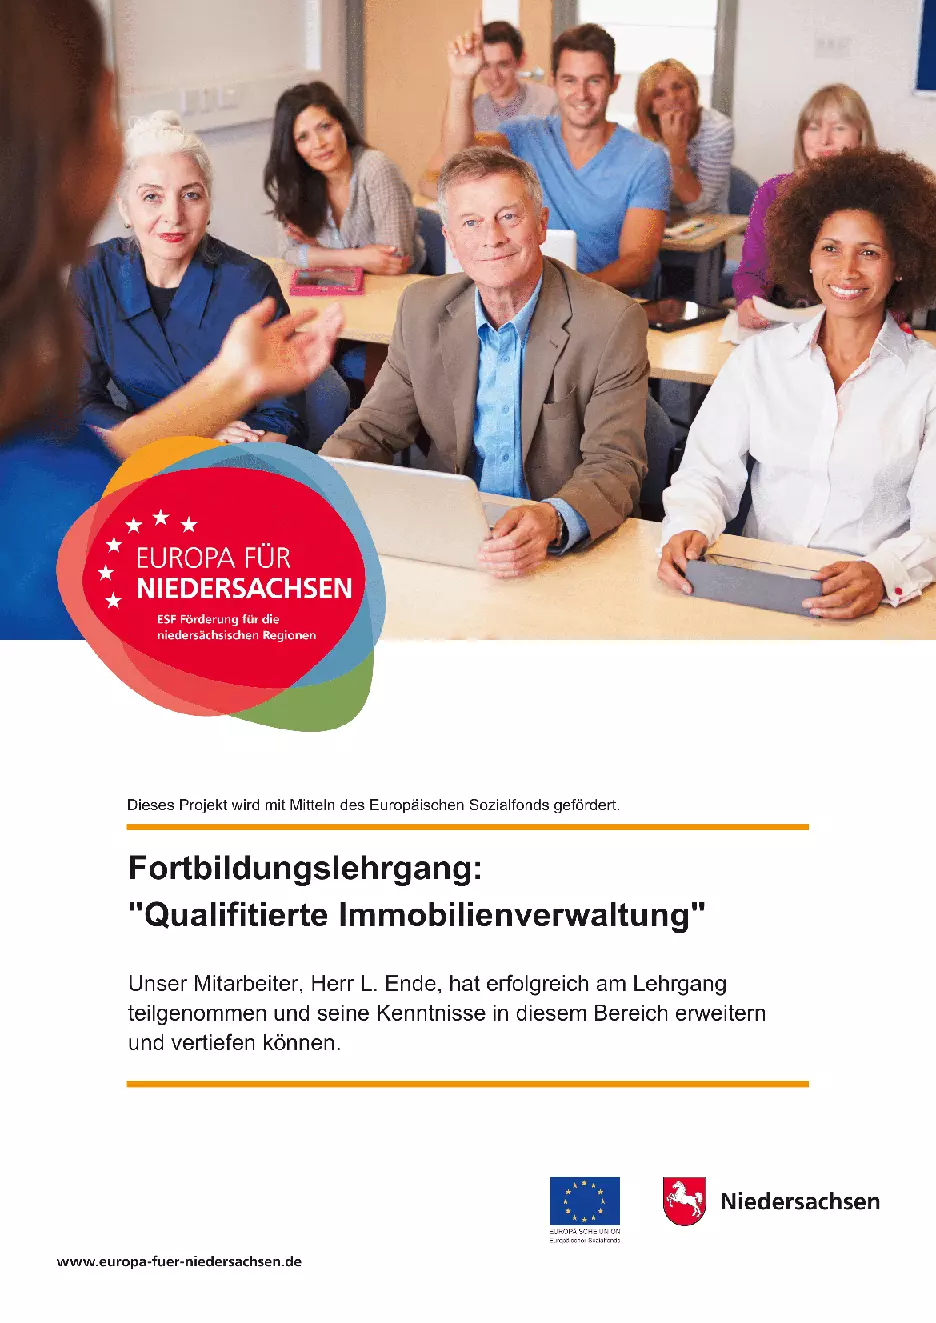 Zertifikat Fortbildungslehrgang Qualifizierte Immobilienverwaltung, Europa für Niedersachsen, Land Niedersachsen